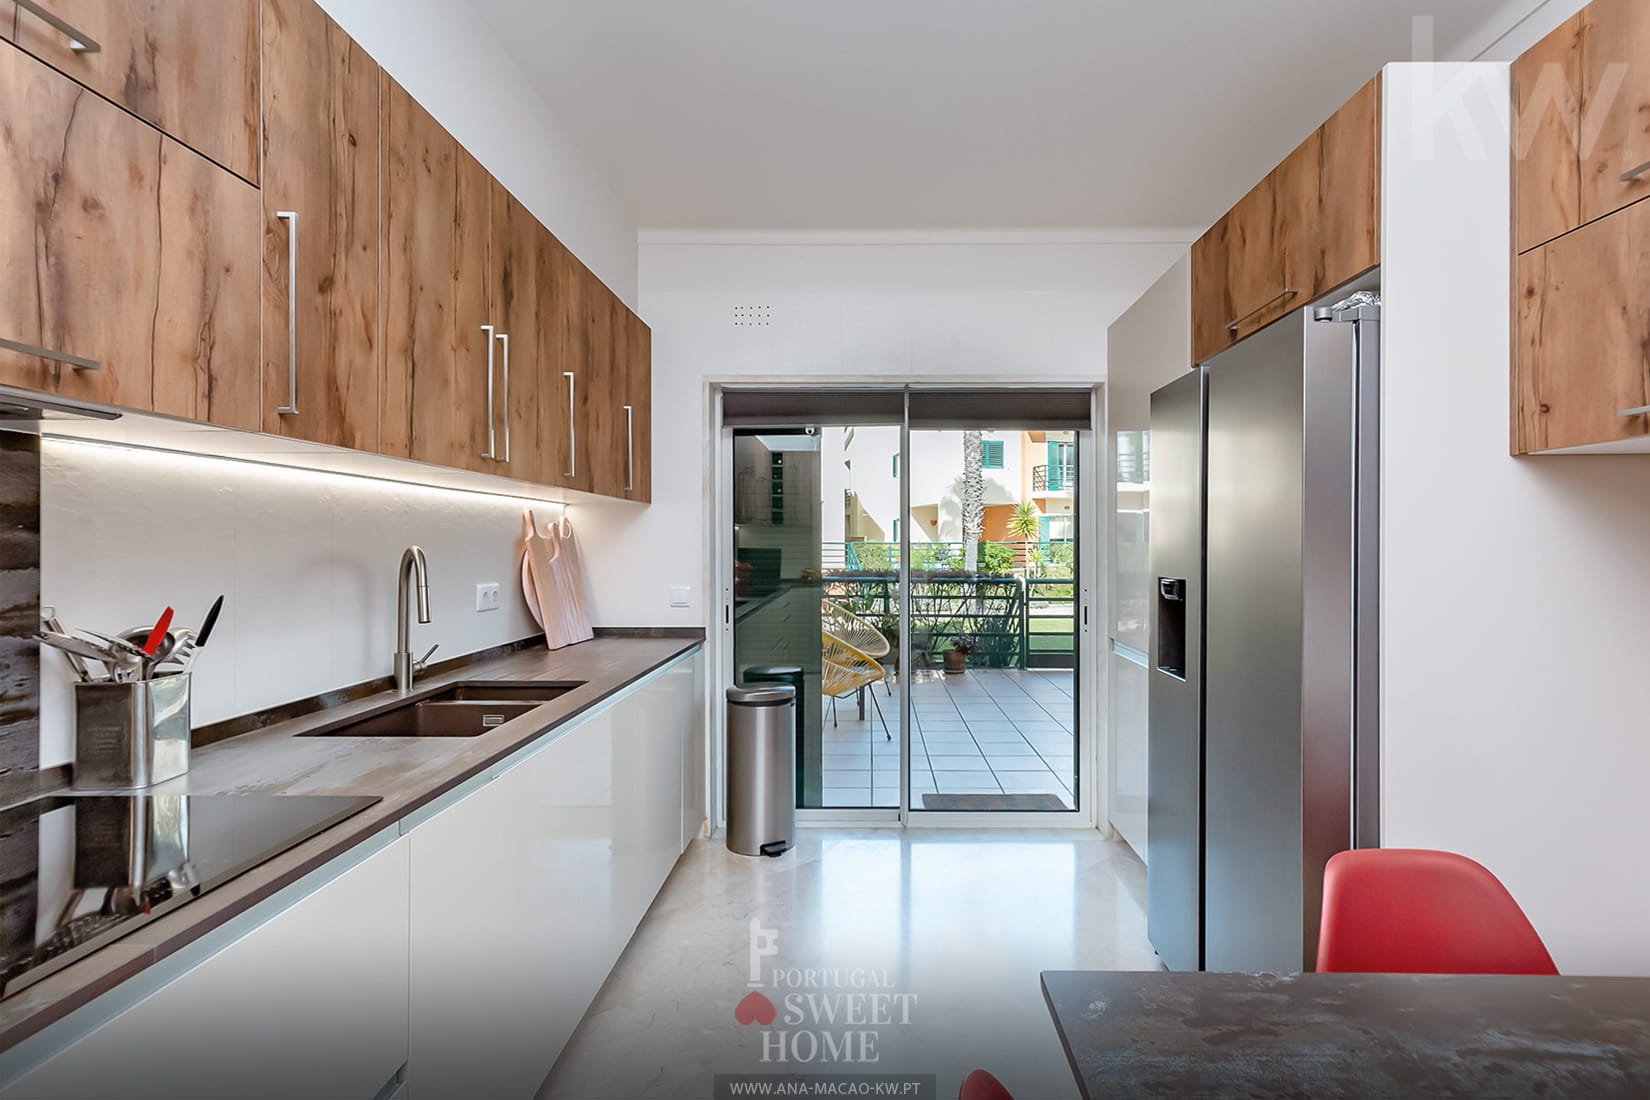 Cozinha (15 m²) renovada com acesso ao terraço debruçado sobre o condomínio